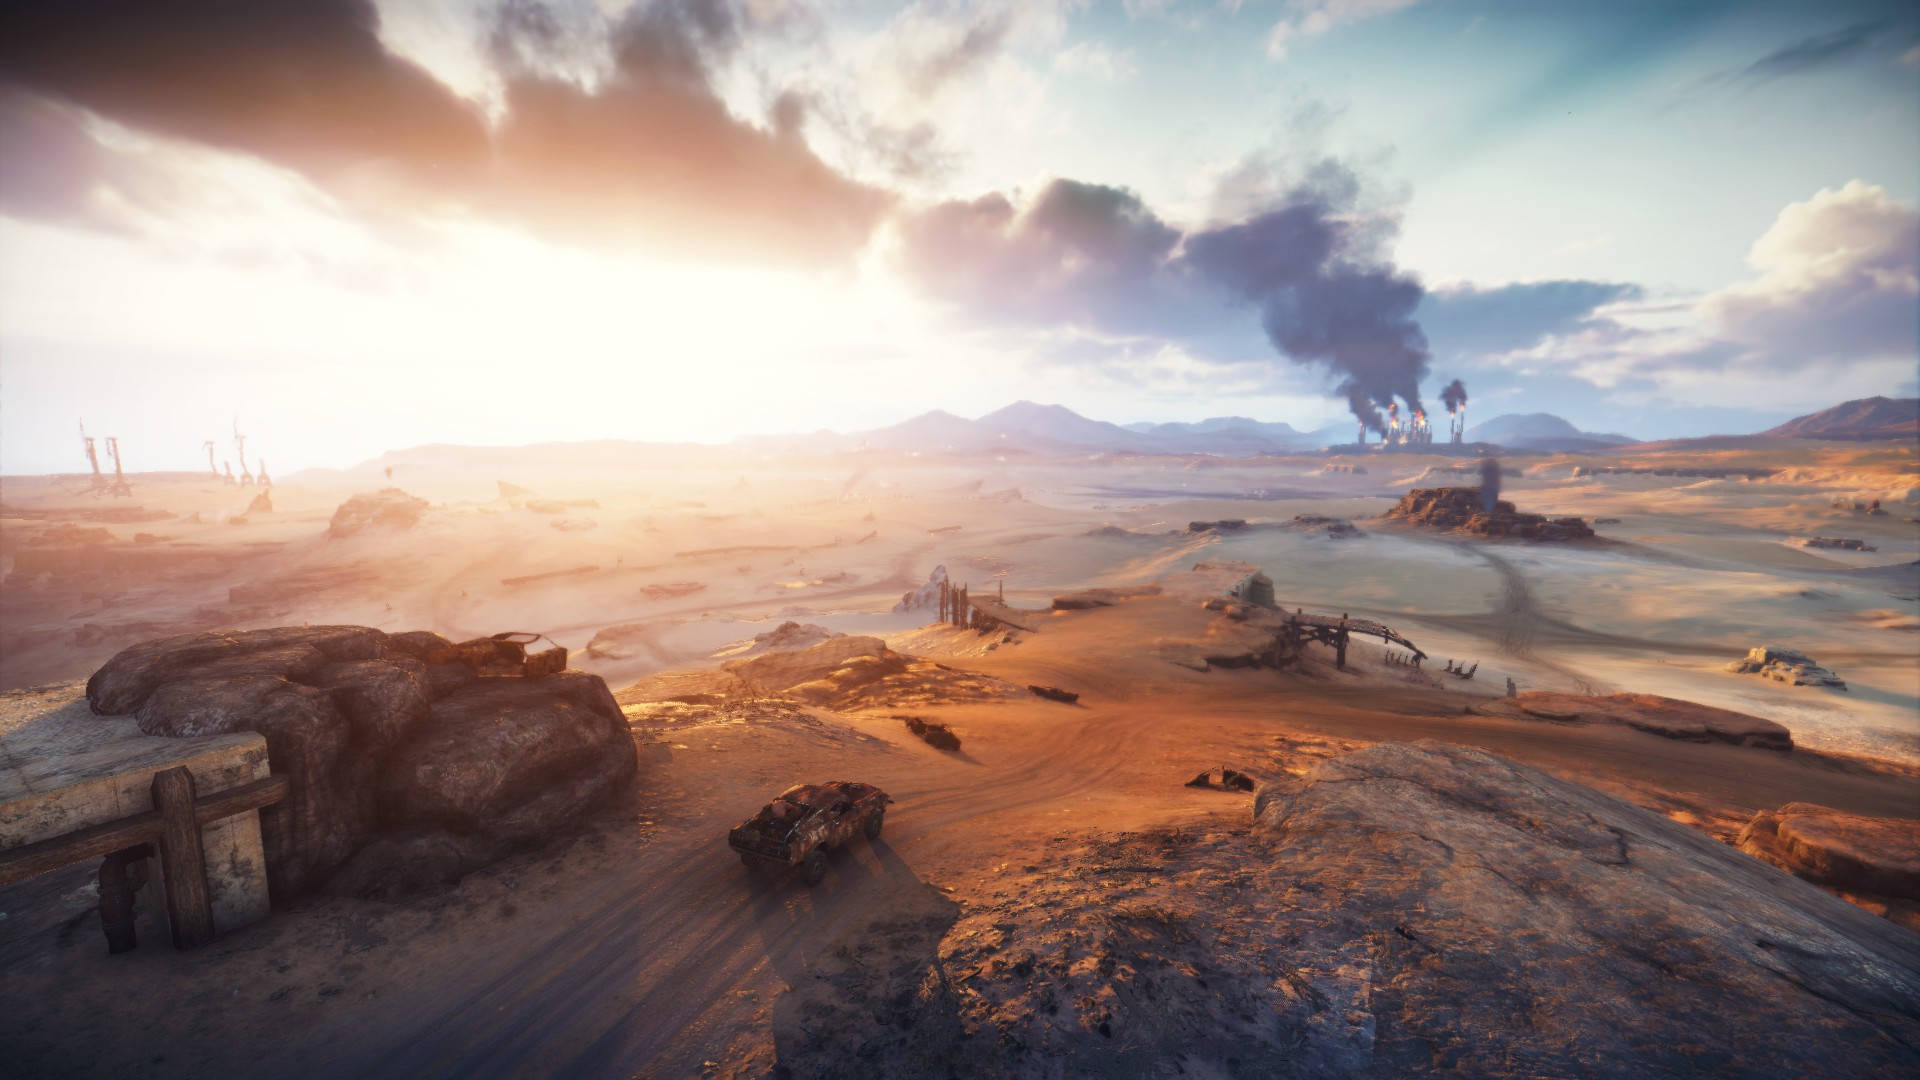 Wasteland Desert Battlefield Background